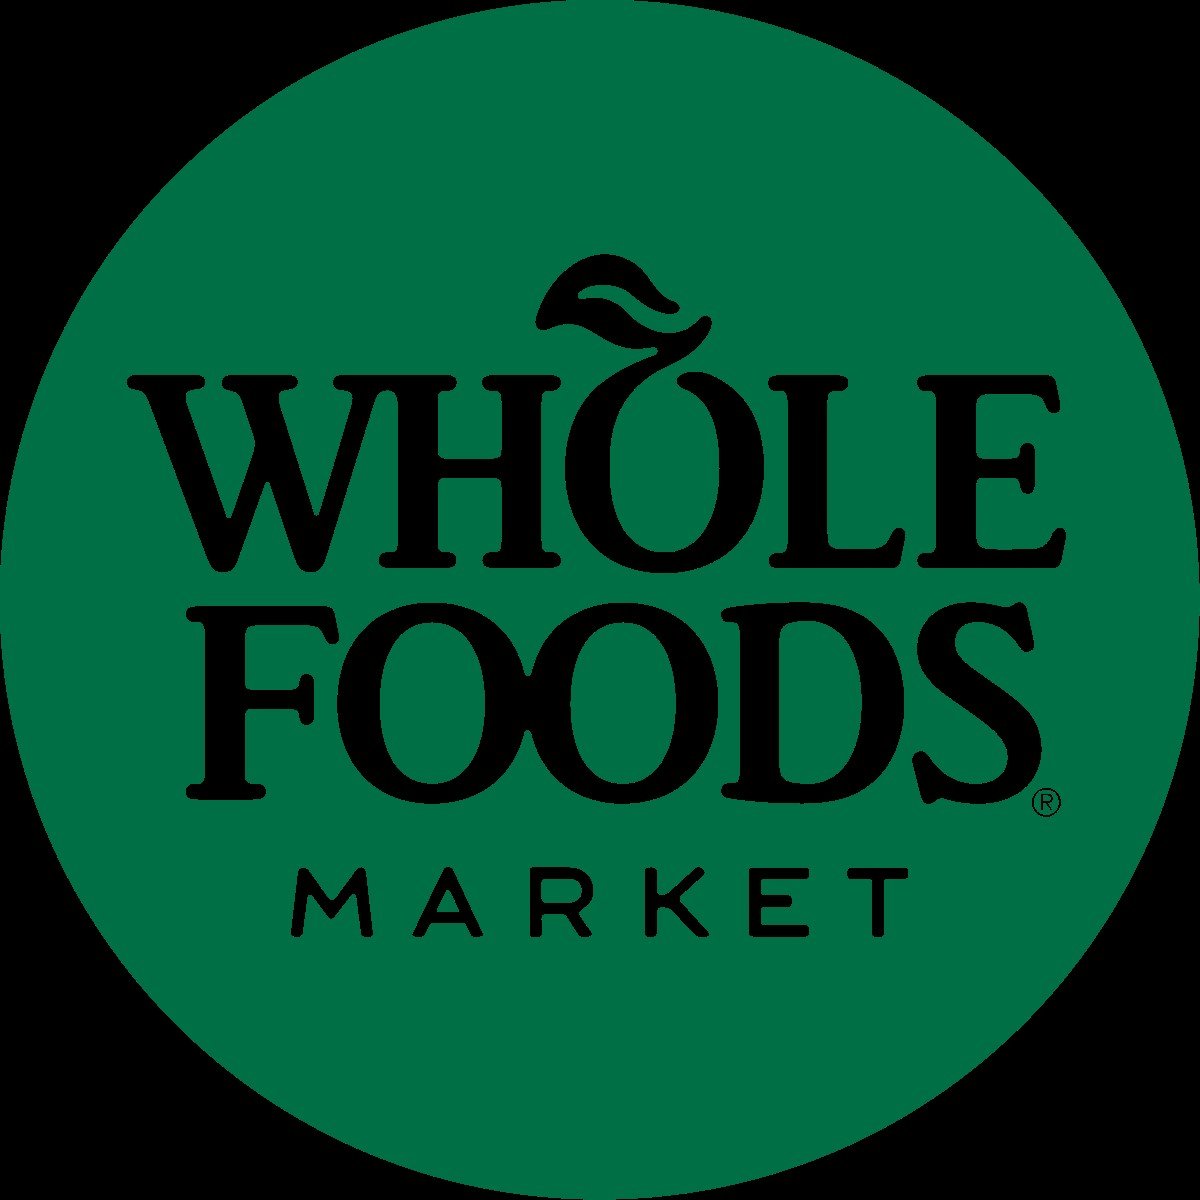 1200px-Whole_Foods_Market_201x_logo.jpeg